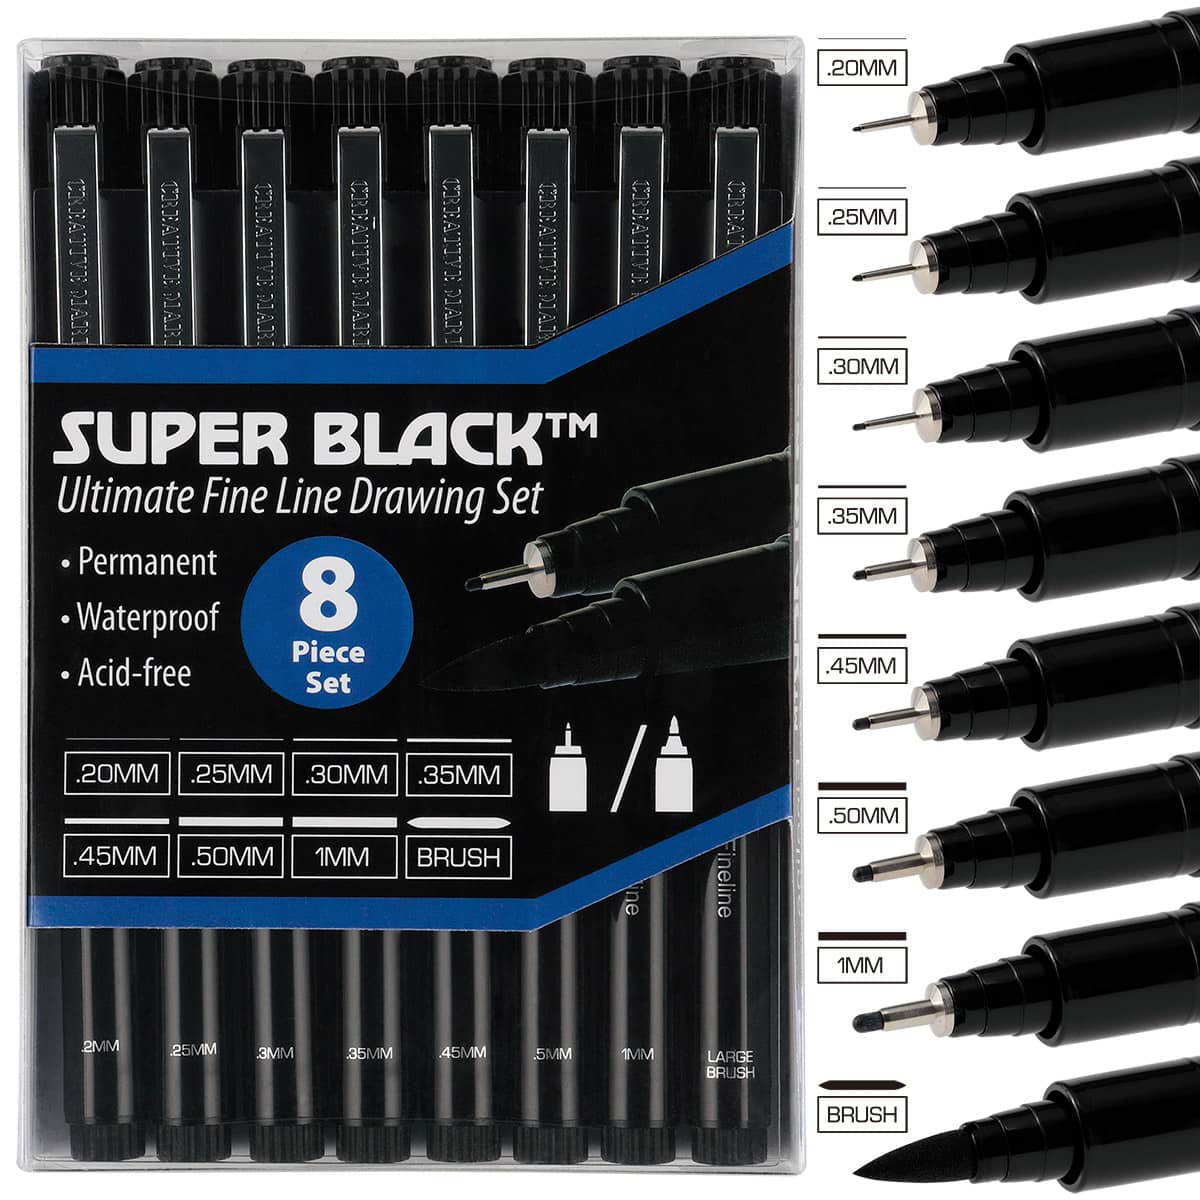 Super black fineliner sets